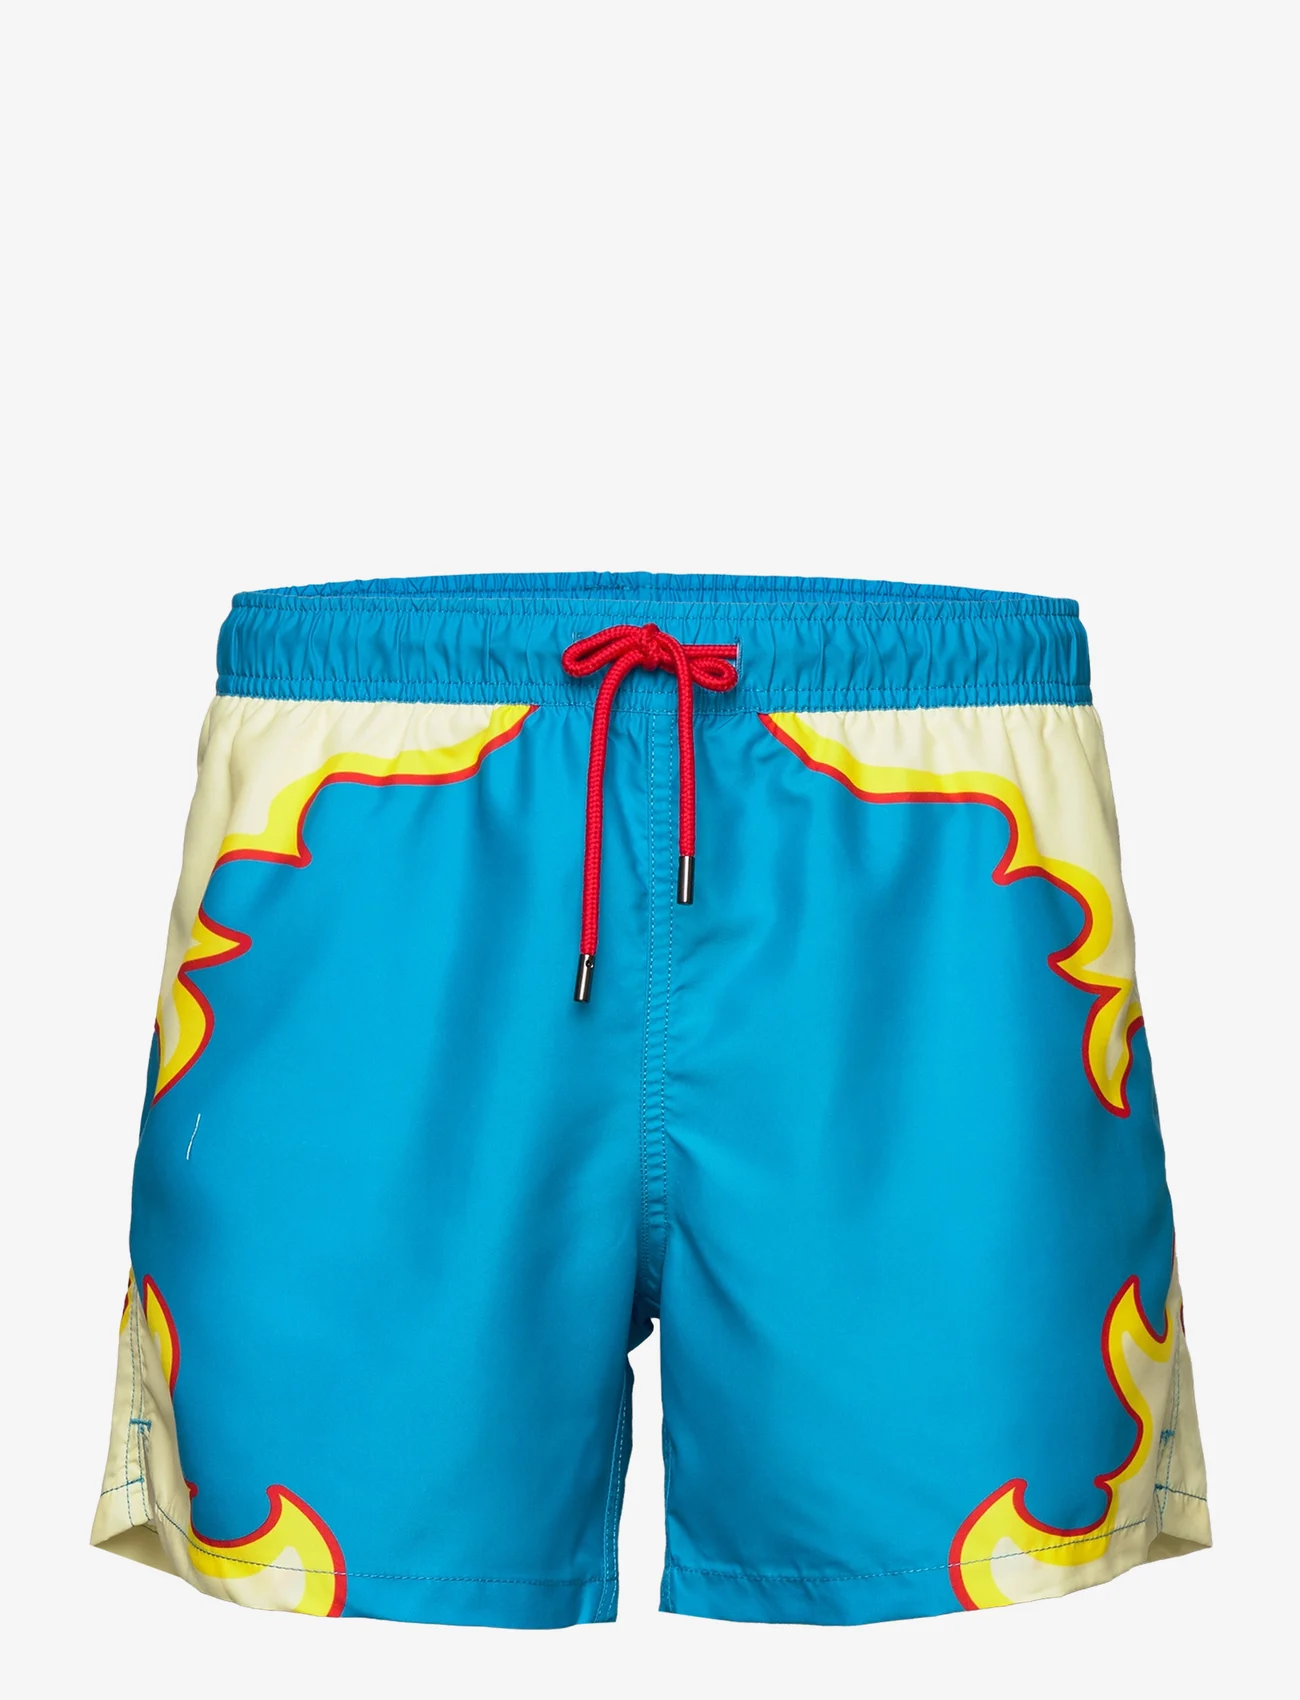 Happy Socks - Bling It Swim Shorts - uimashortsit - turquoise - 0